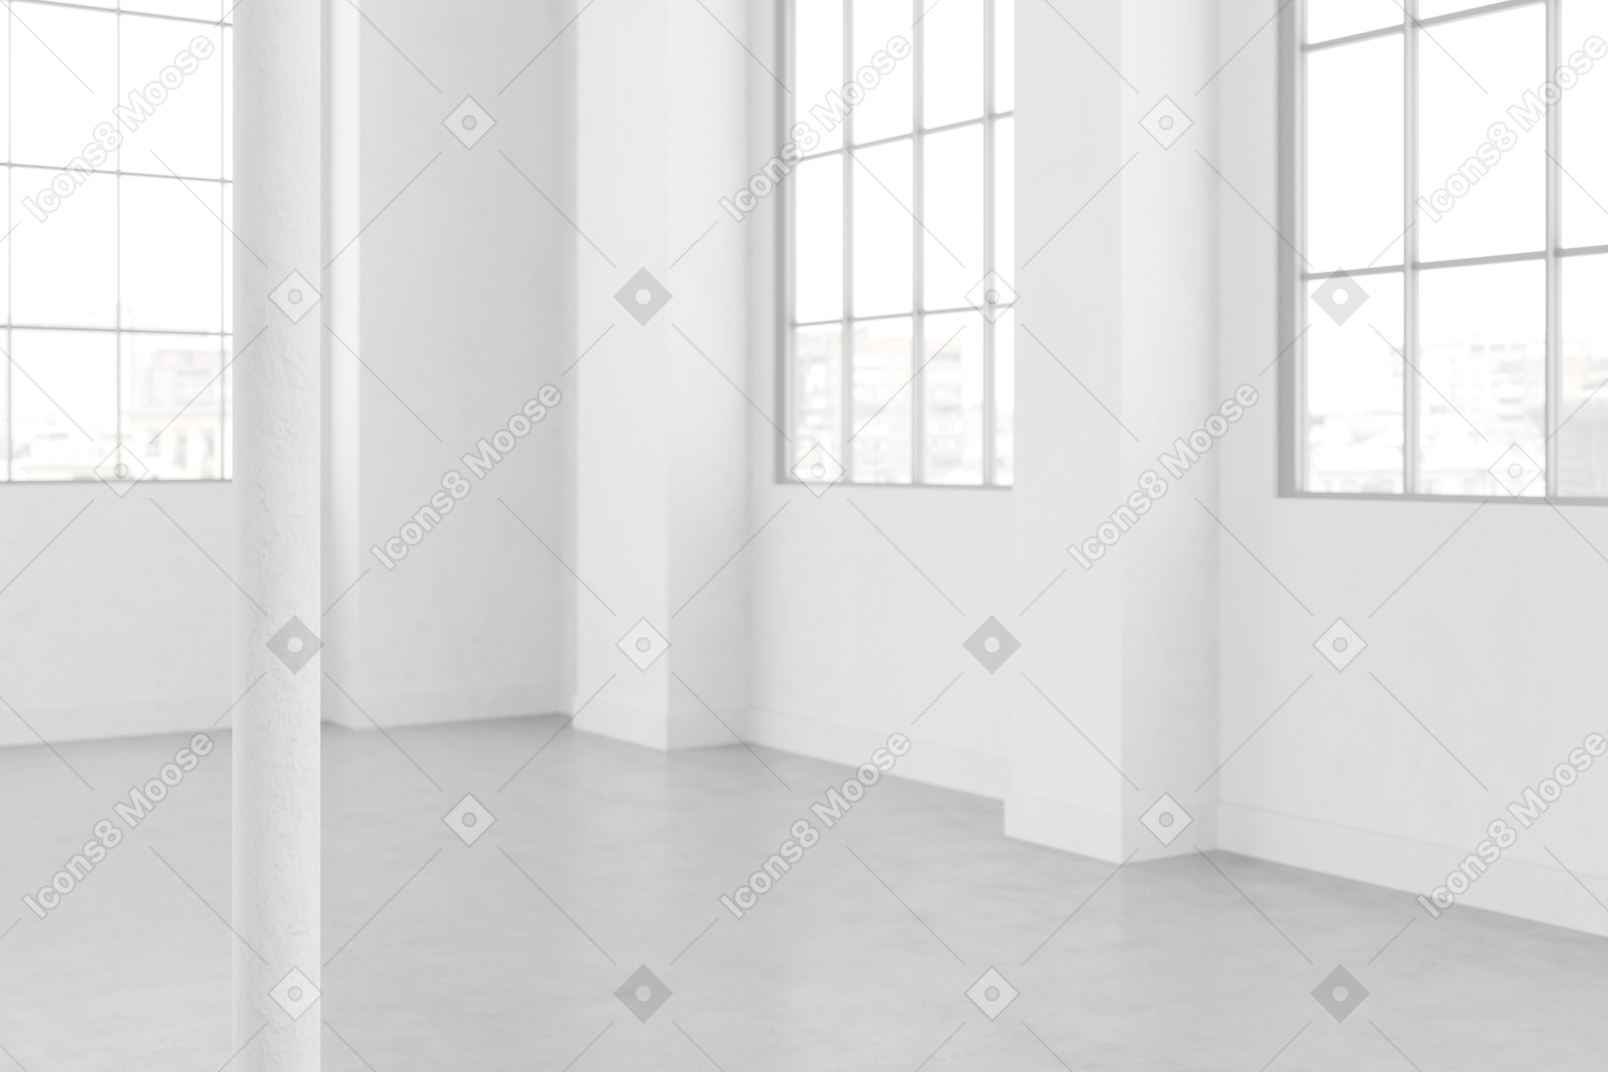 Sala com grandes janelas envidraçadas e paredes brancas